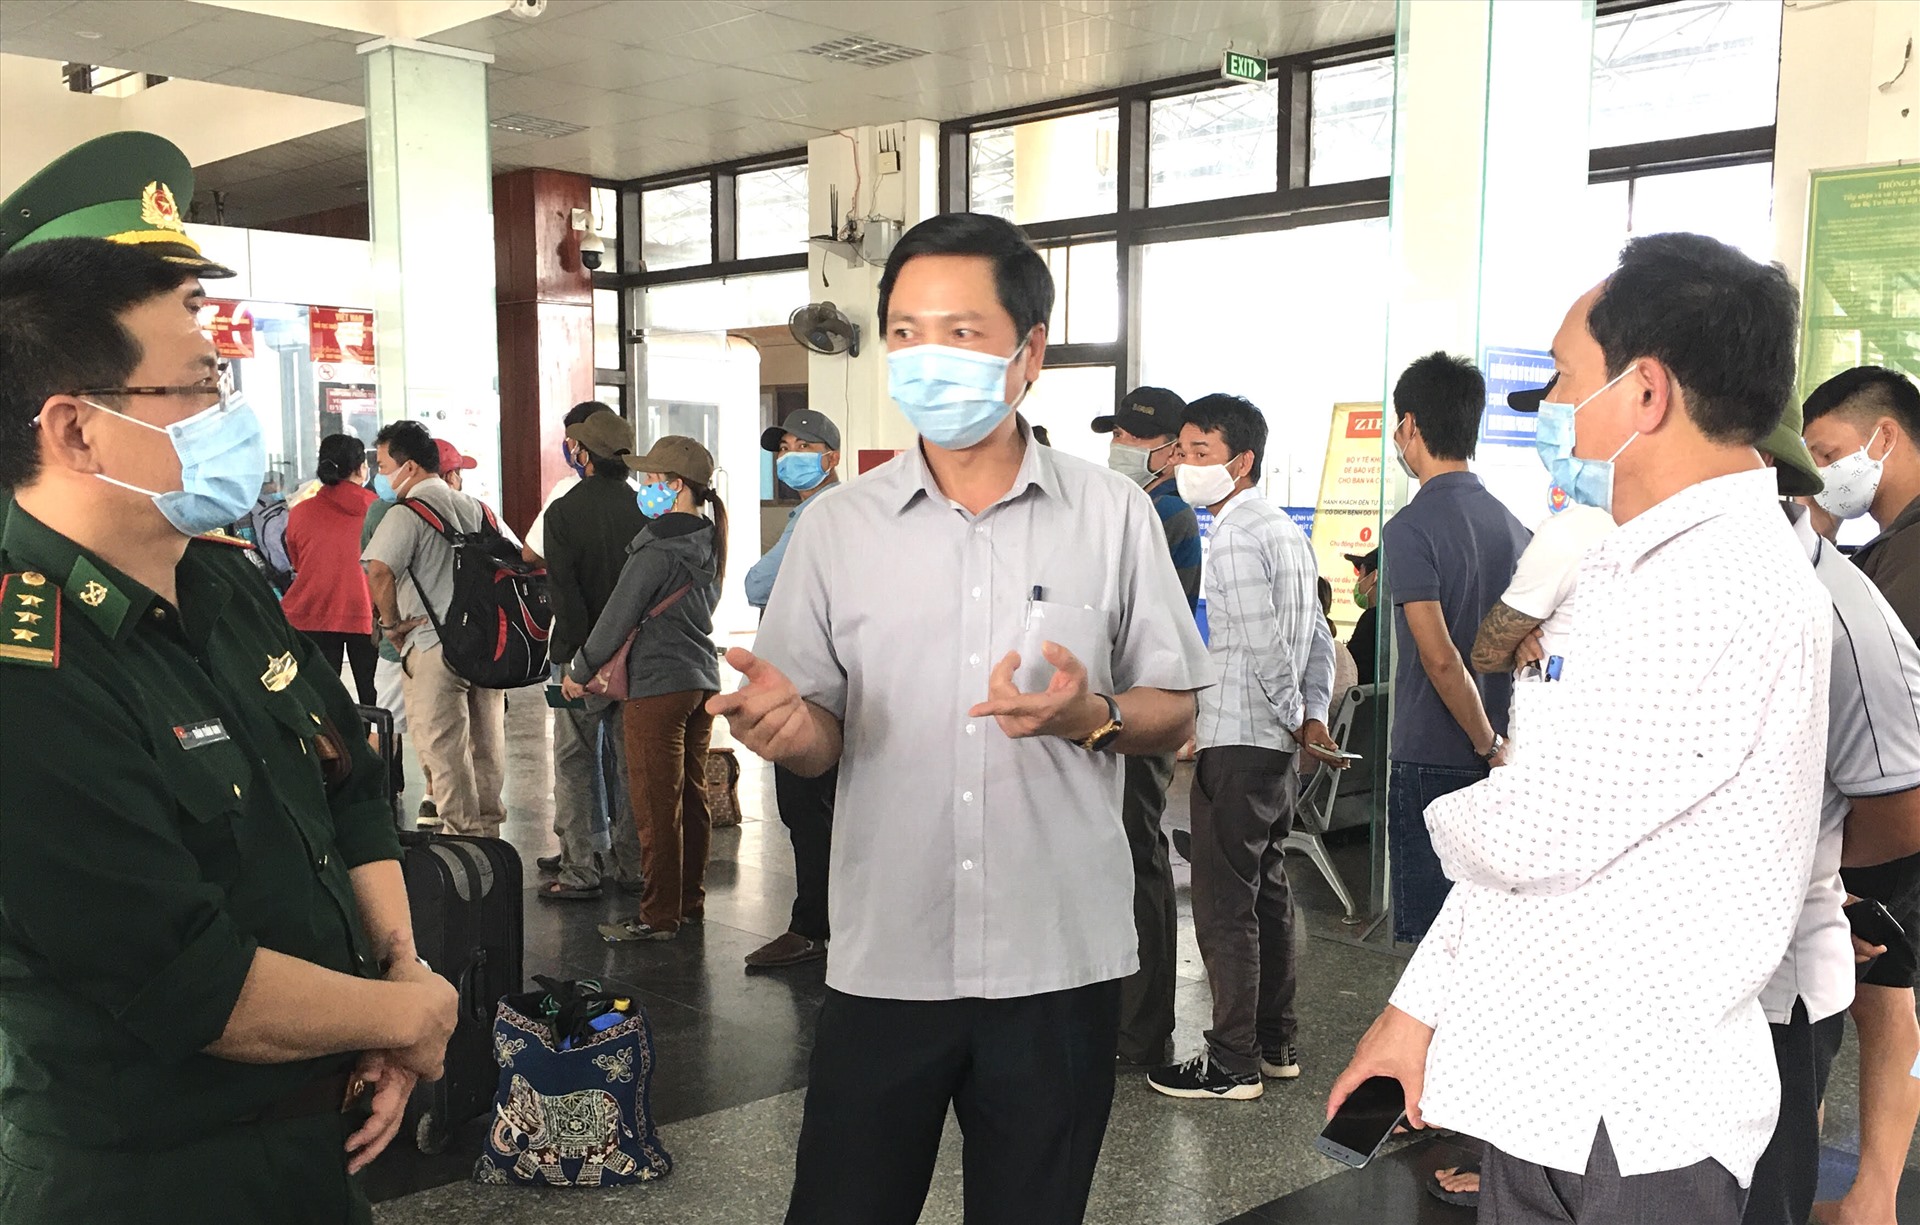 Ông Hoàng Nam - Phó Chủ tịch UBND tỉnh Quảng Trị chỉ đạo kiểm tra, cách ly người nhập cảnh ở Cửa khẩu Quốc tế Lao Bảo. Ảnh: NL.